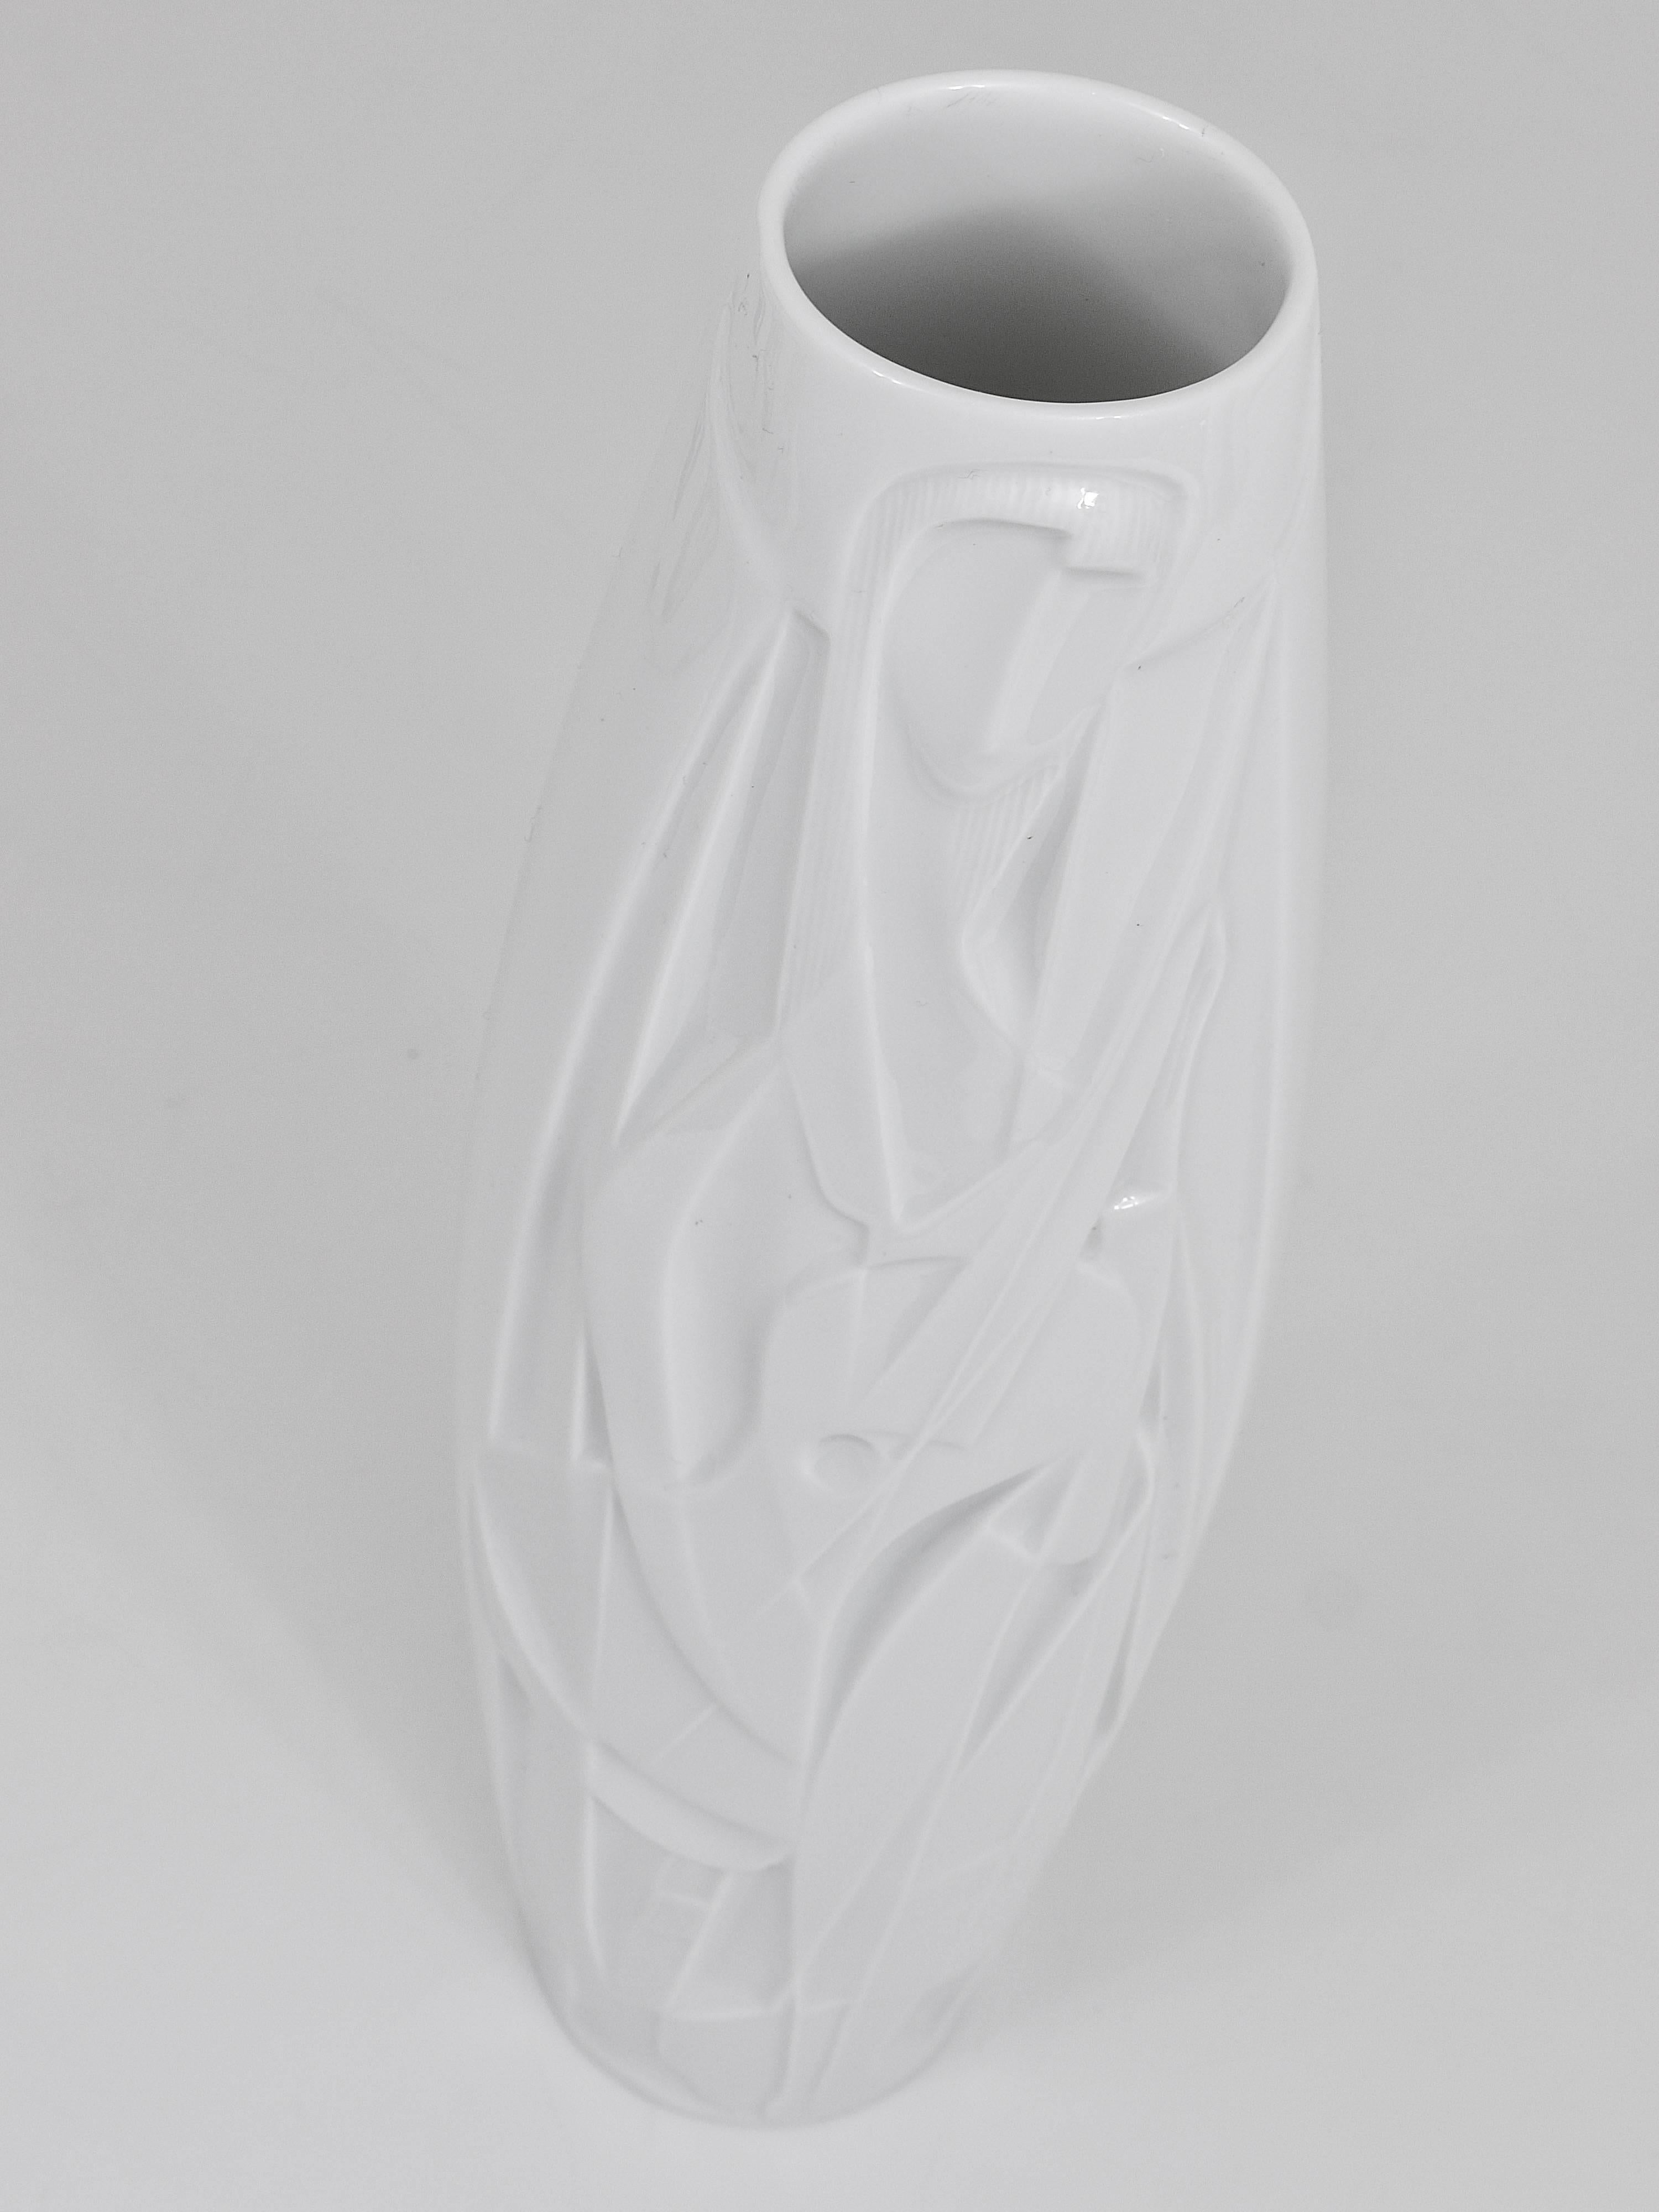 Un bellissimo vaso in porcellana Op-Art bianca 